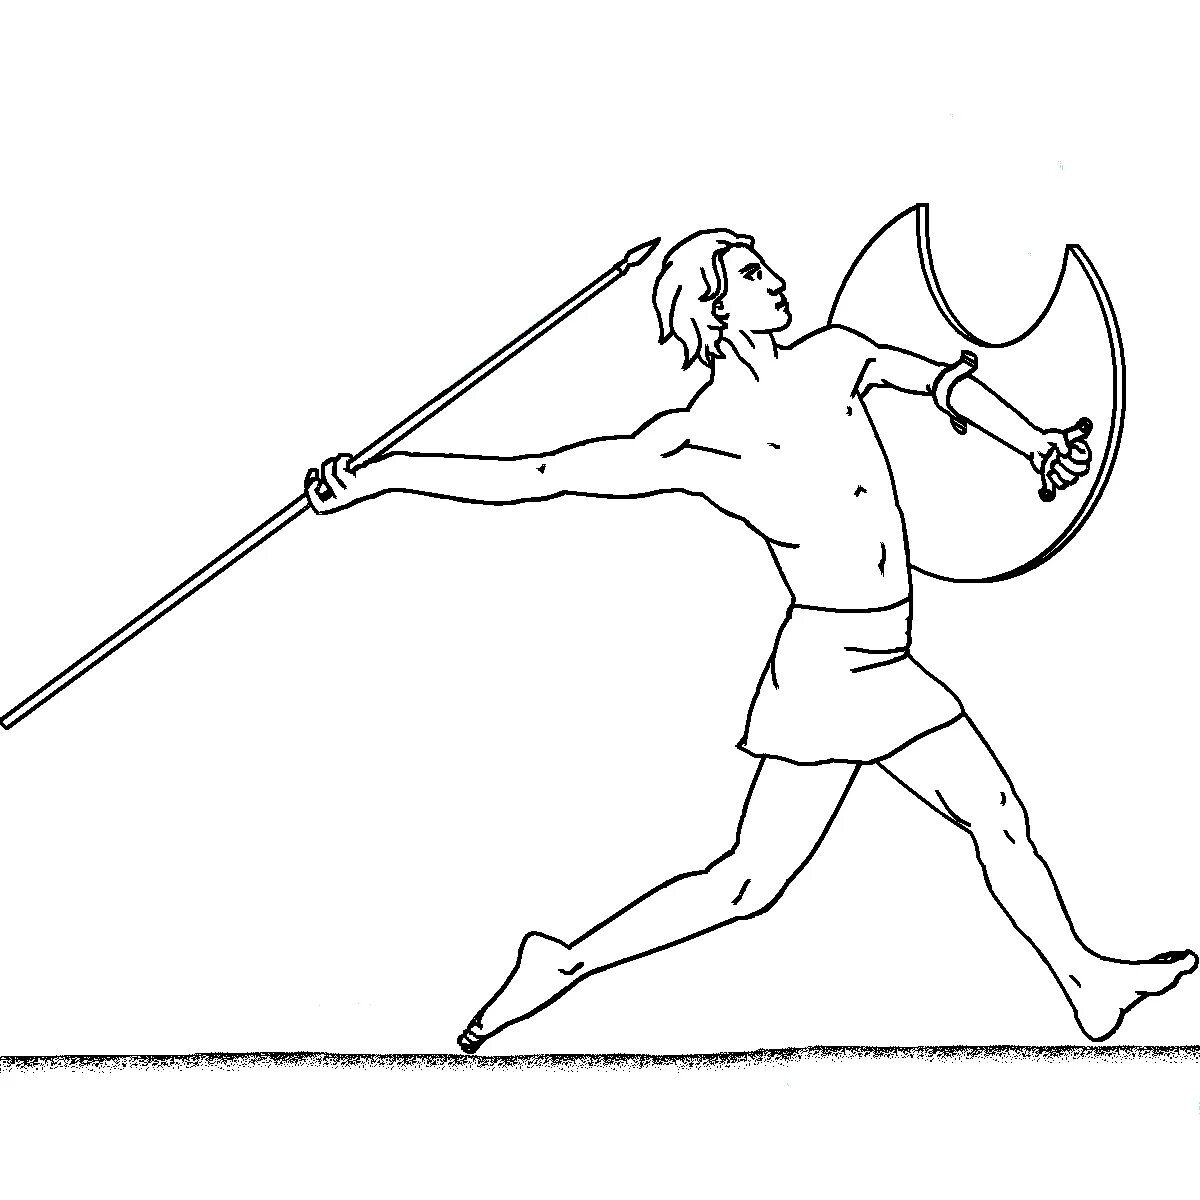 Олимпийские игры в древней греции #10